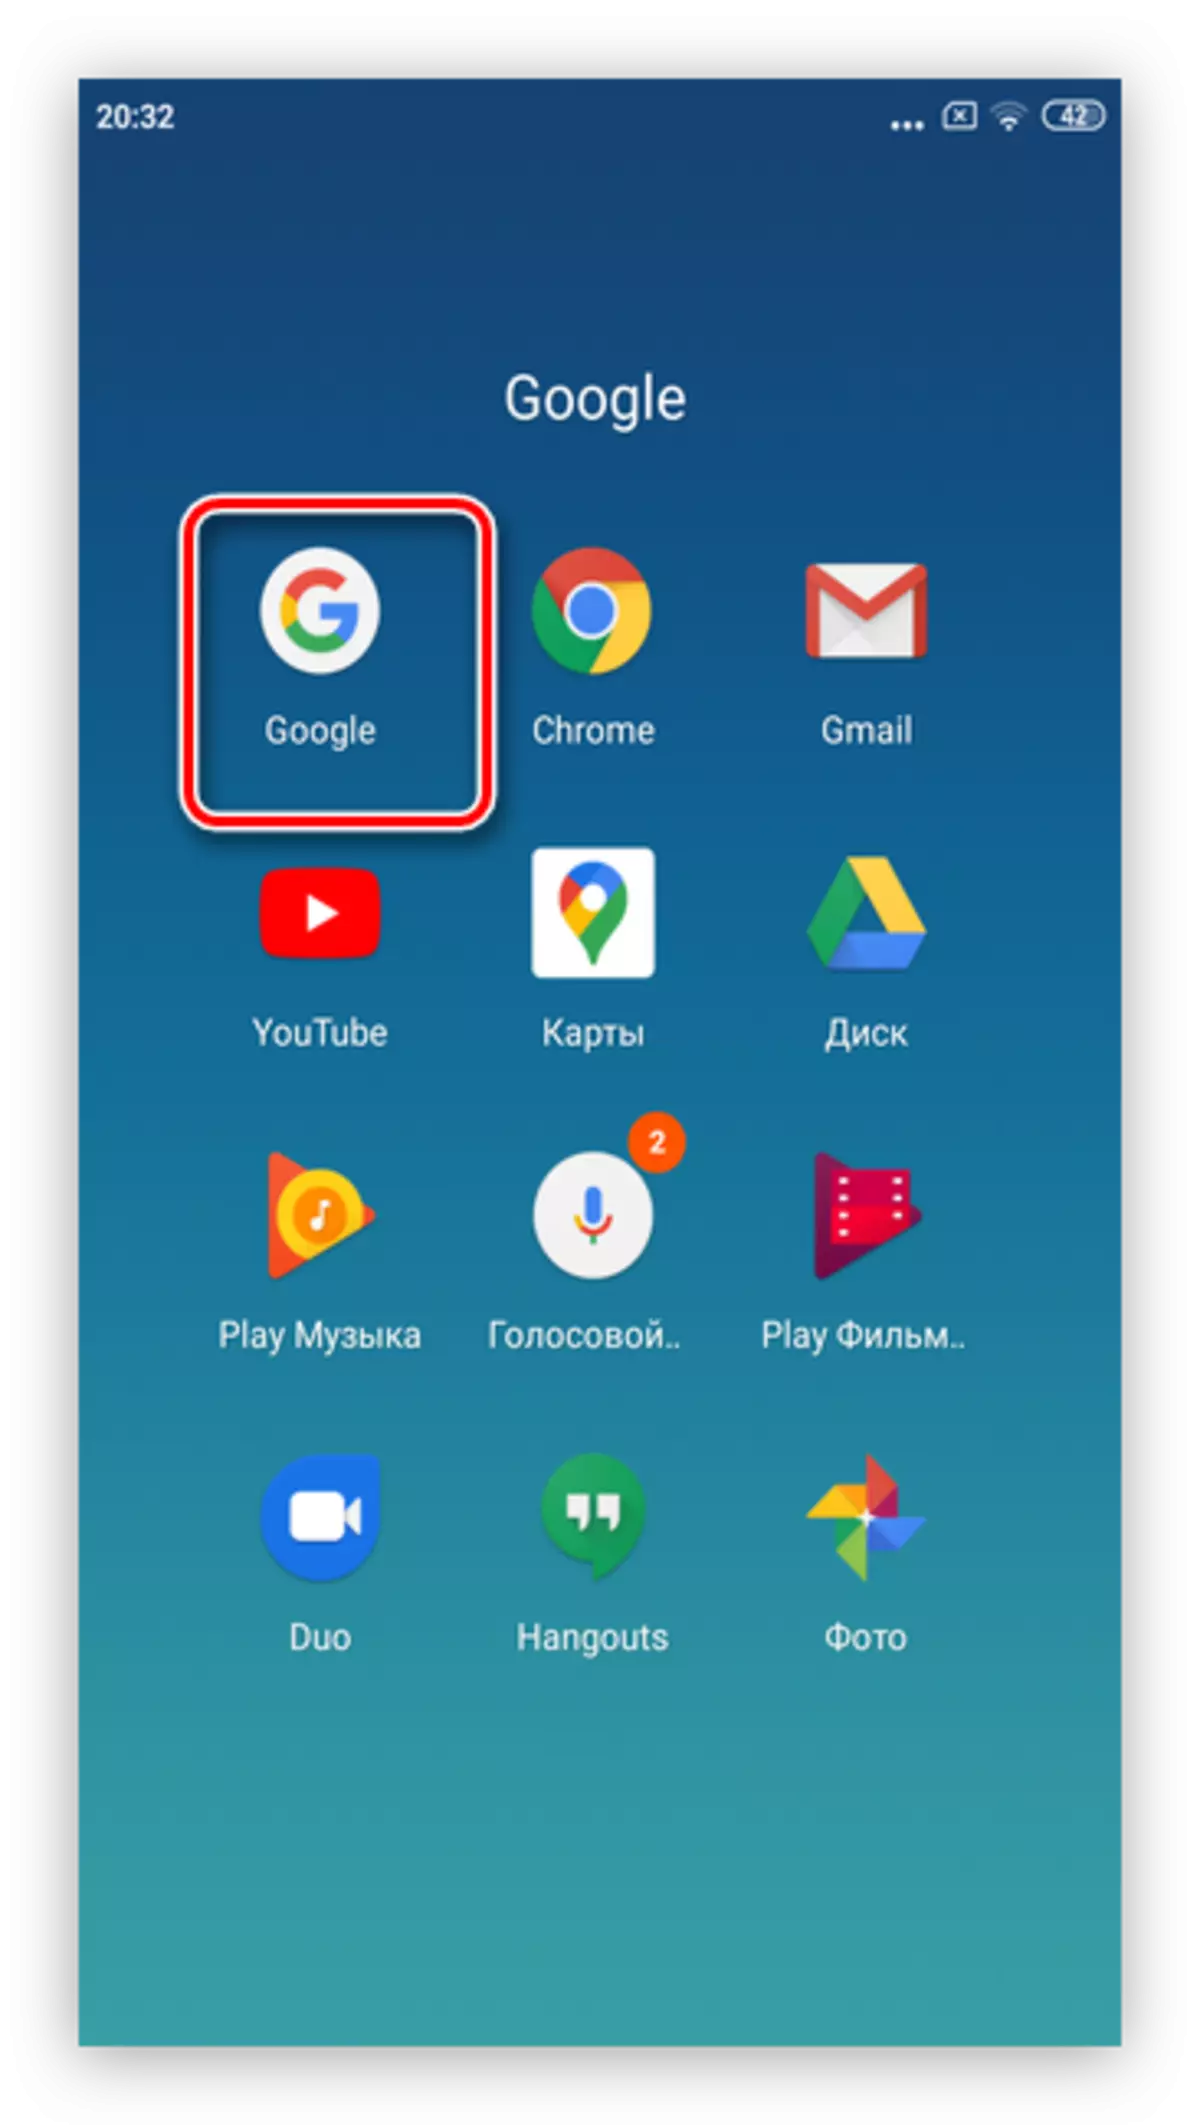 Åbn Google App for at fjerne Google-annoncering på Android-smartphones gennem systemet